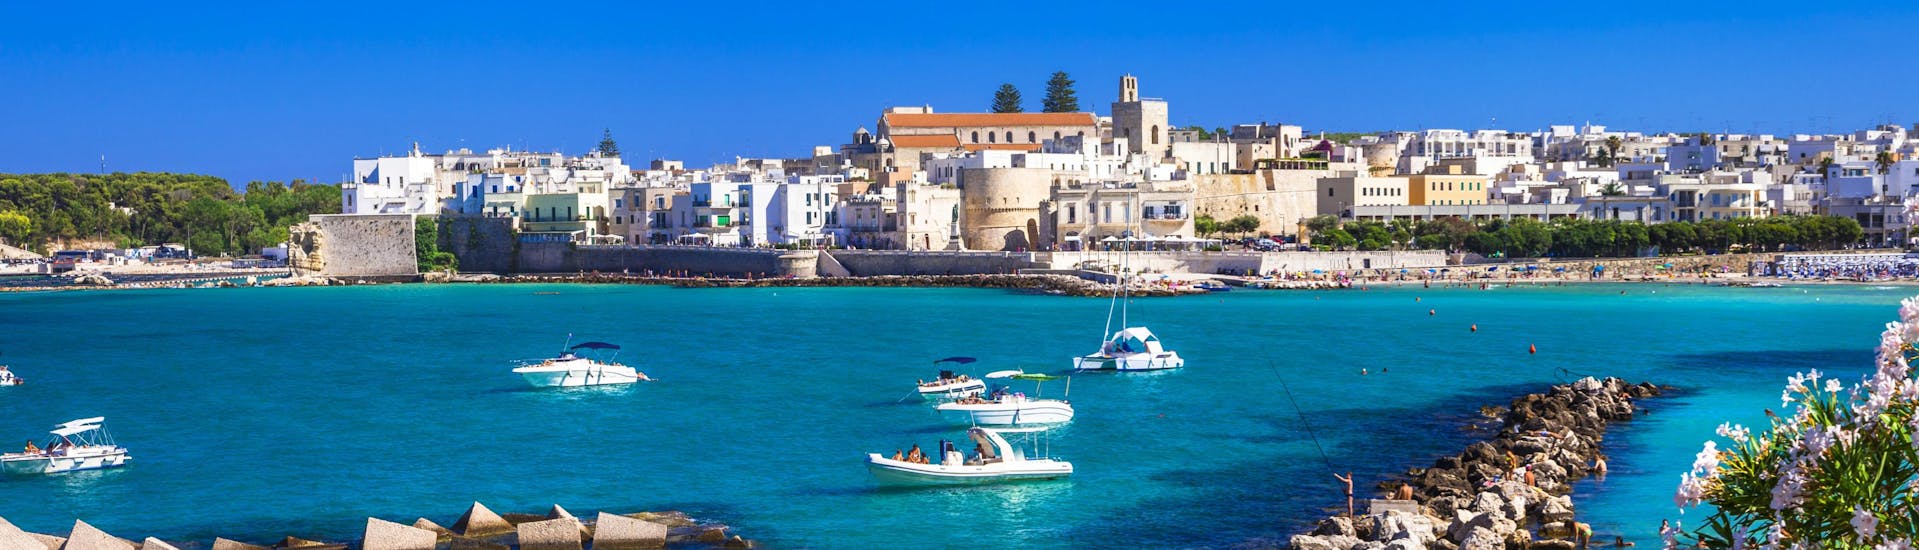 De stad Otranto gezien door de zee, een prachtig uitzicht waarvan u kunt genieten tijdens een boottocht.